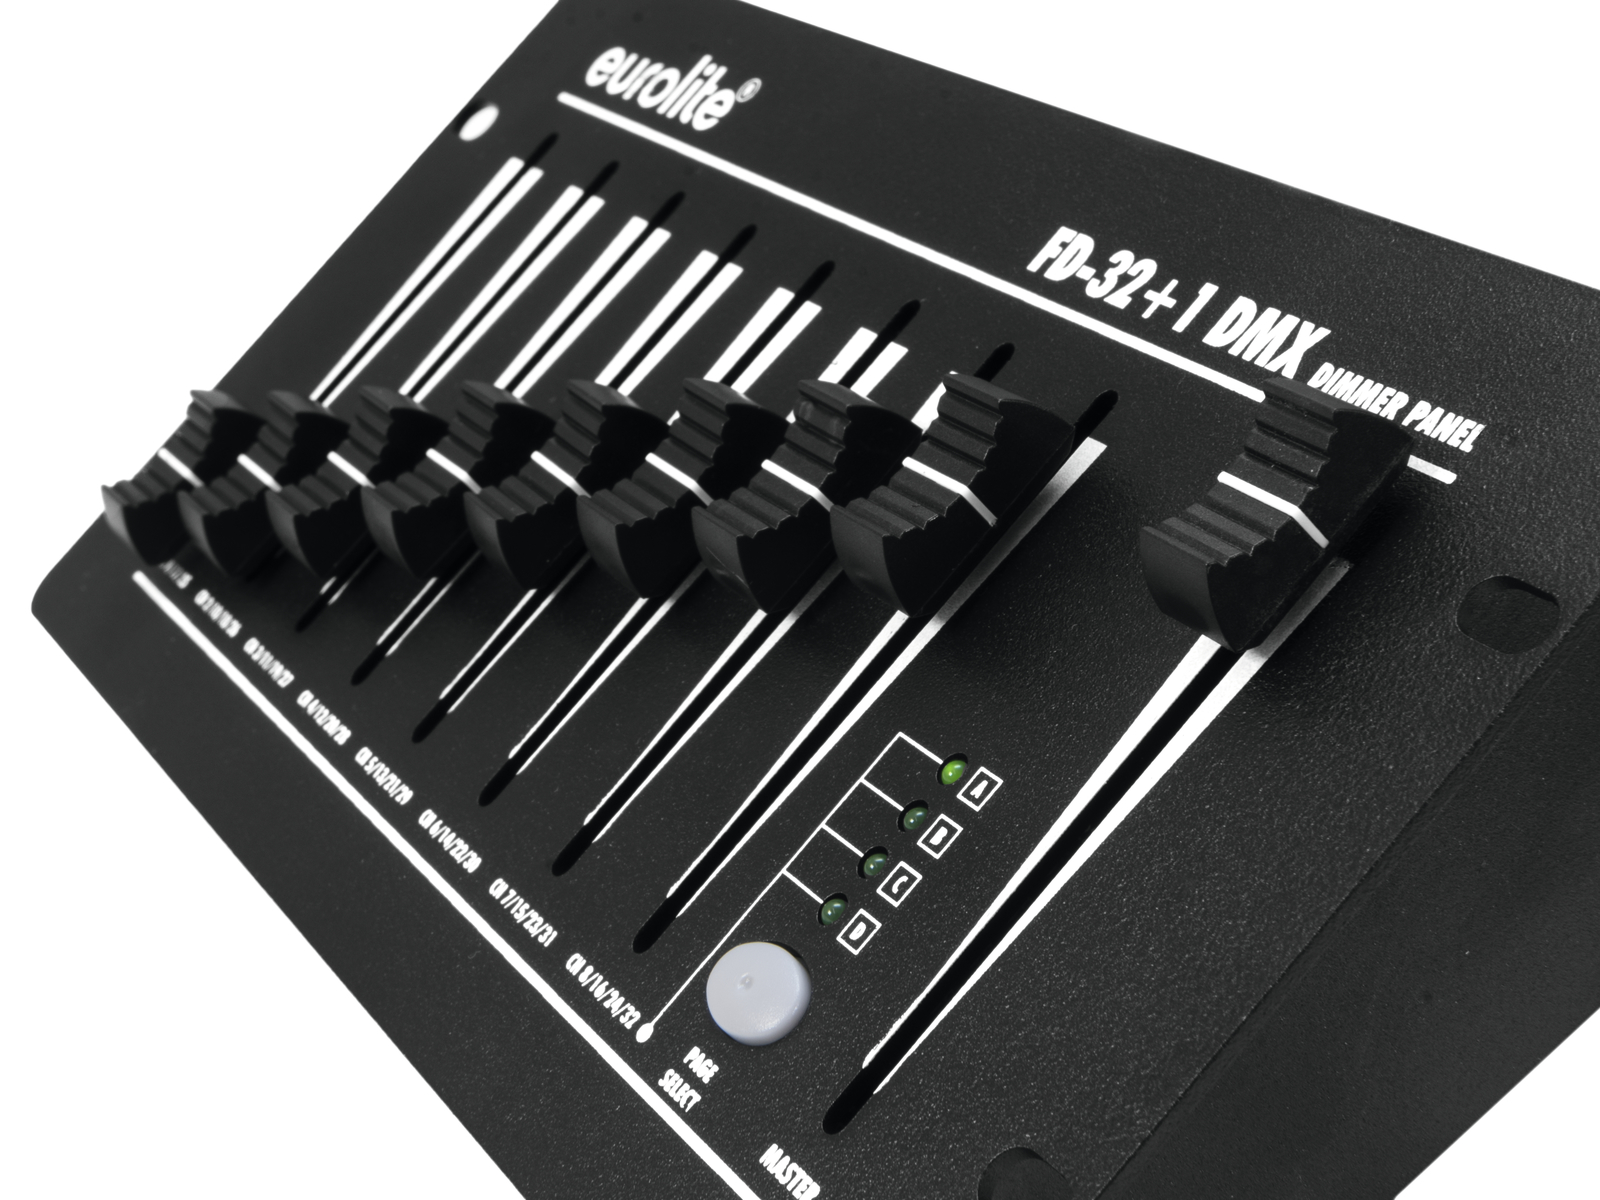 DMX Steuerung - Controller - 32 Kanäle + Master - Batteriebetrieb möglich - 32+1 Fader - inkl. externes Netzteil